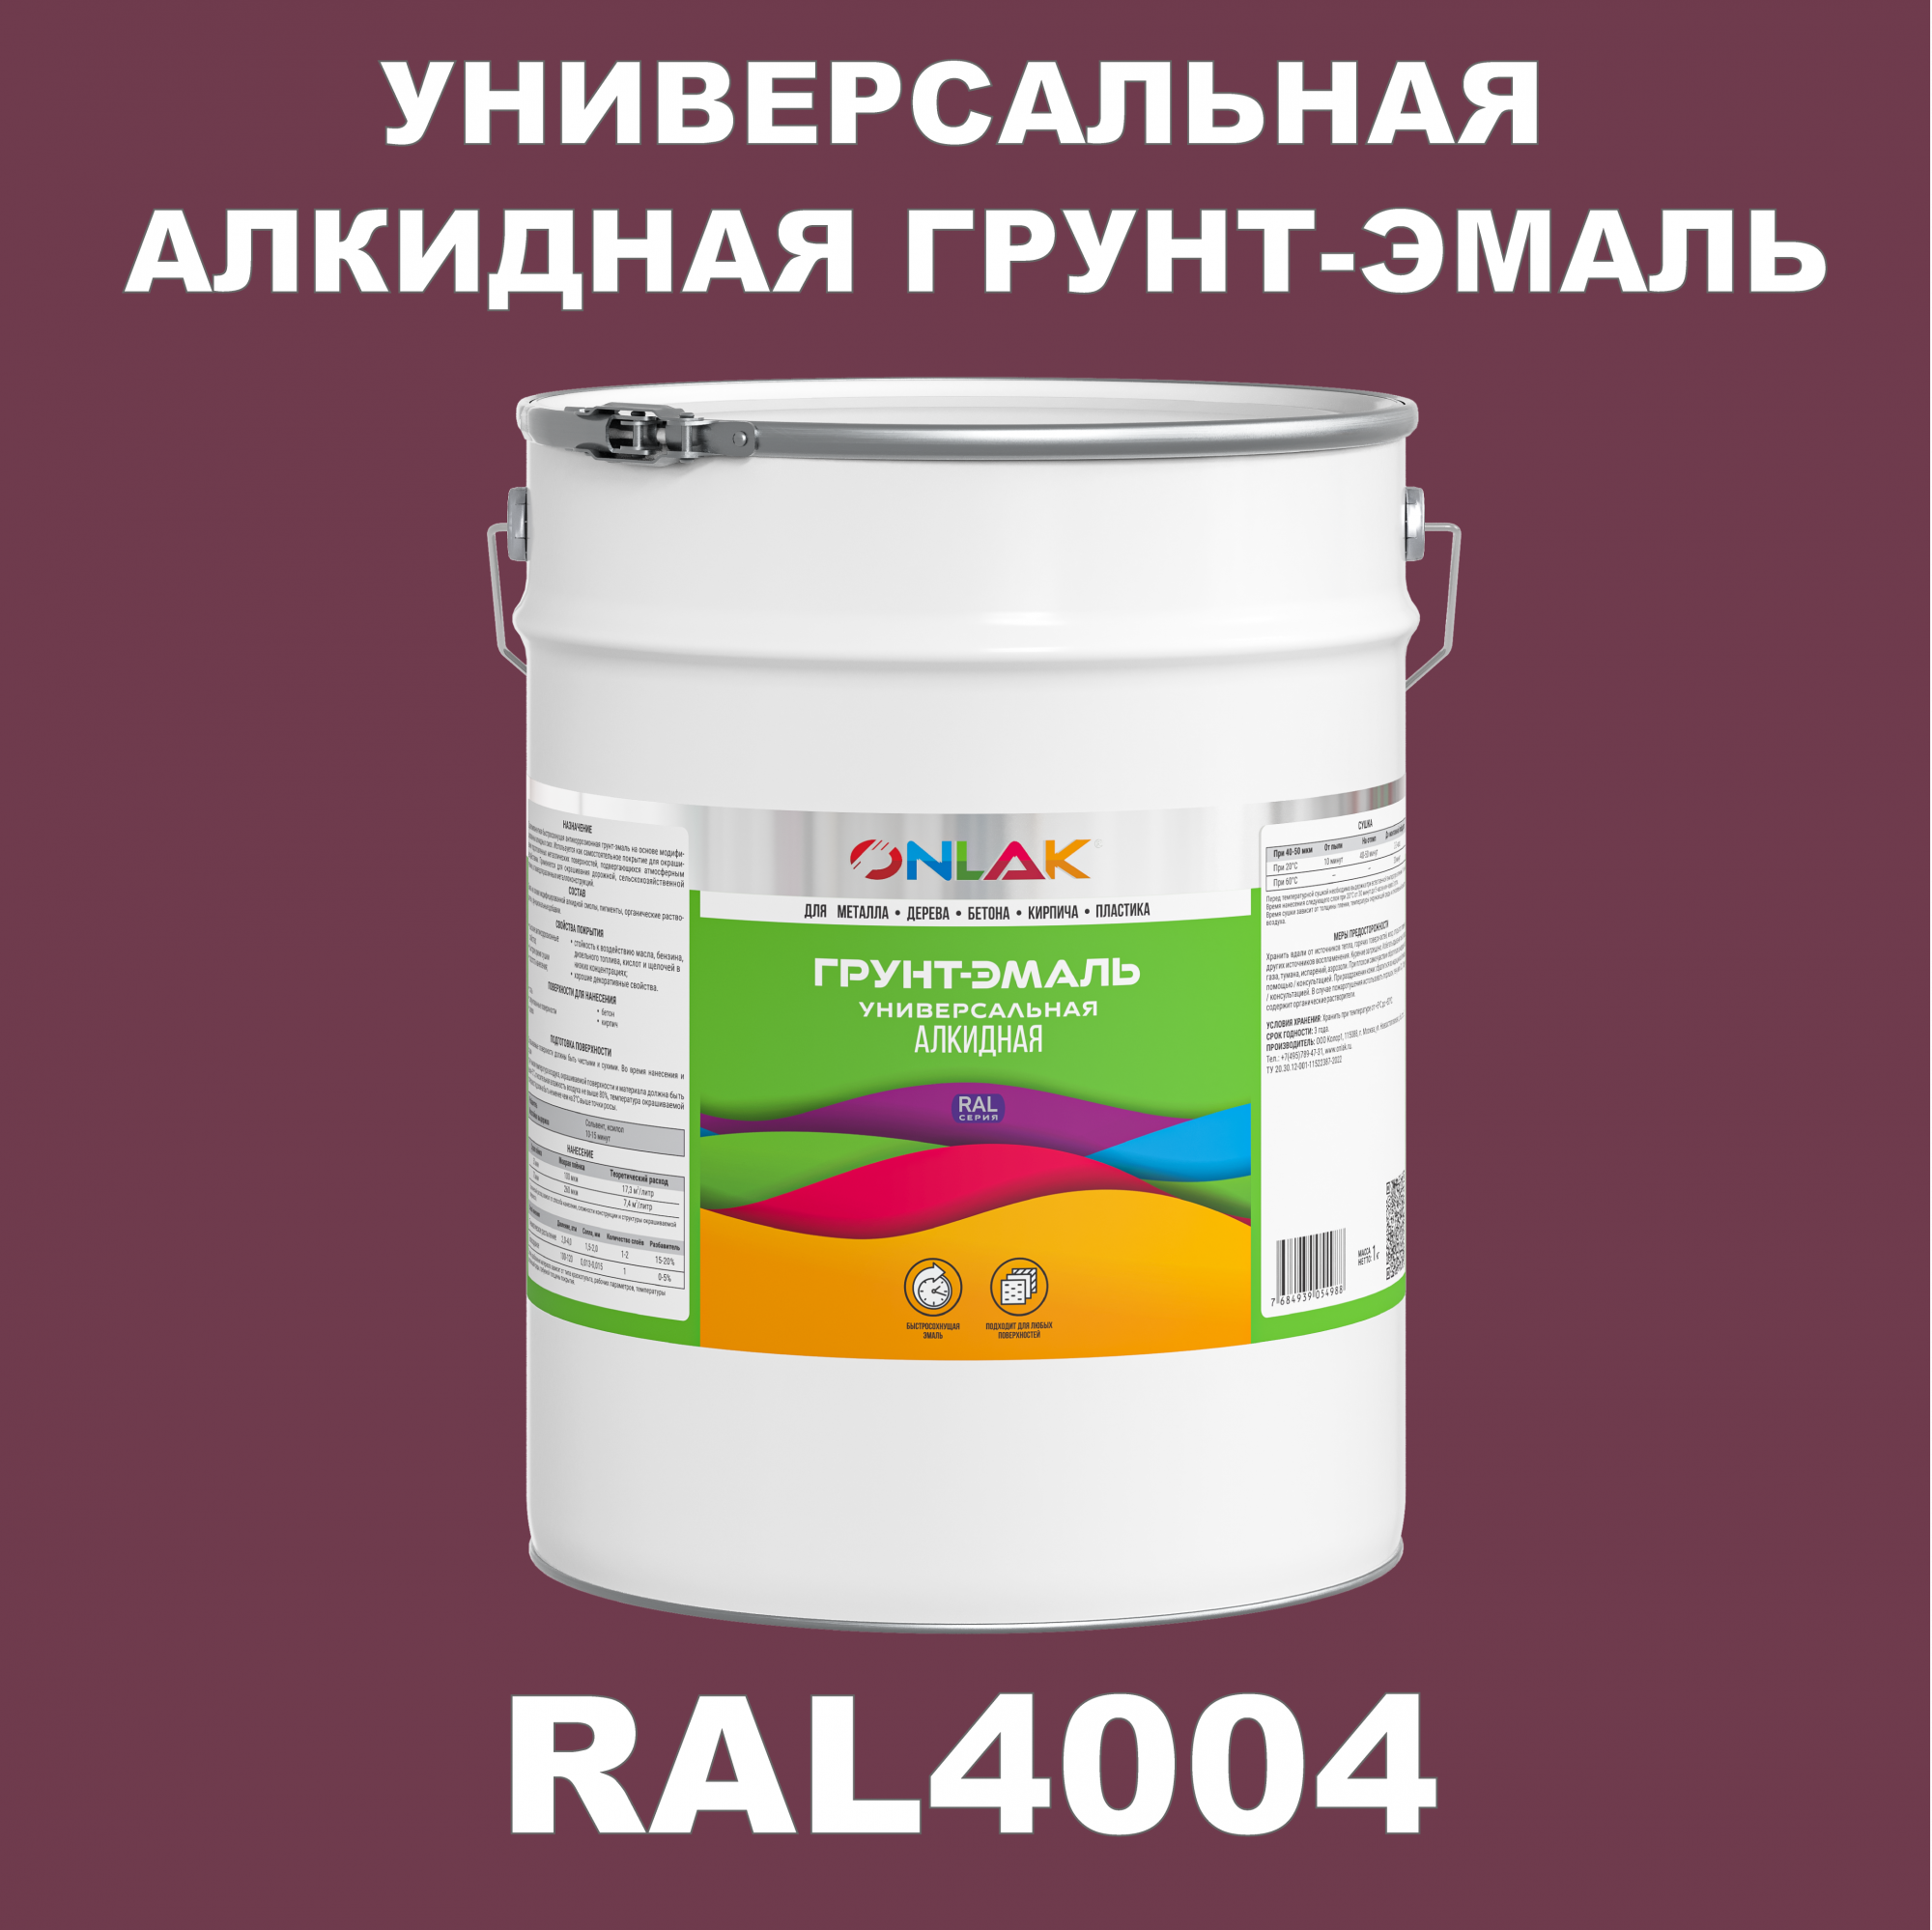 Грунт-эмаль ONLAK 1К RAL4004 антикоррозионная алкидная по металлу по ржавчине 20 кг антикоррозионная грунт эмаль onlak ral 4003 фиолетовый 542 мл